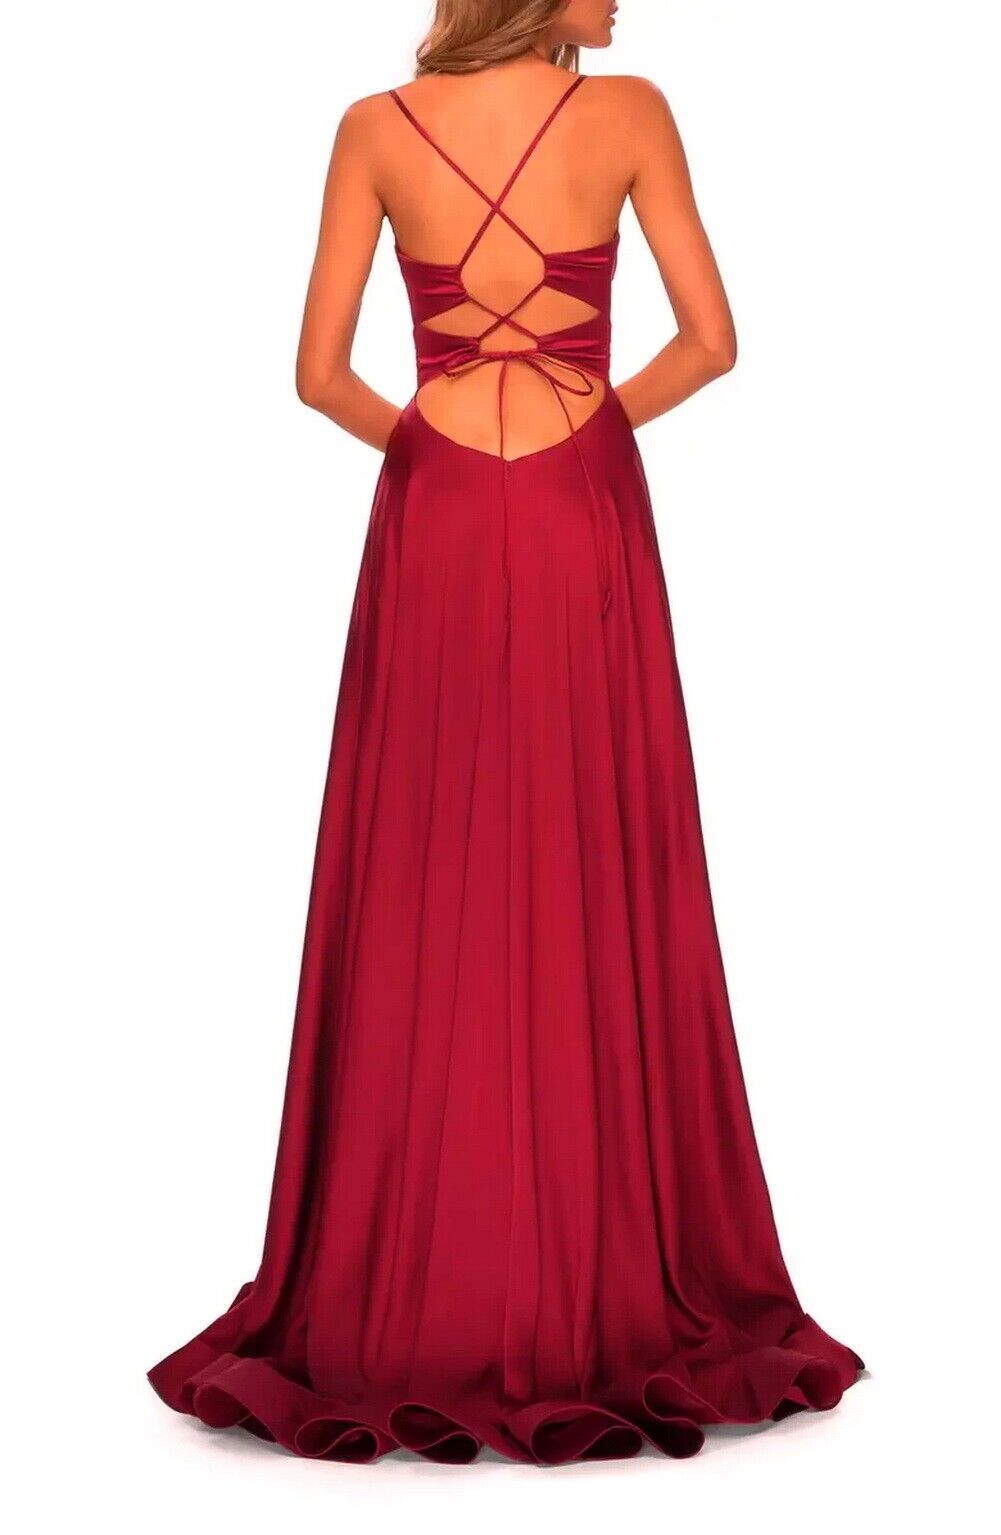 la femme Size 0 Bridesmaid Plunge Burgundy Red Side Slit Dress on Queenly